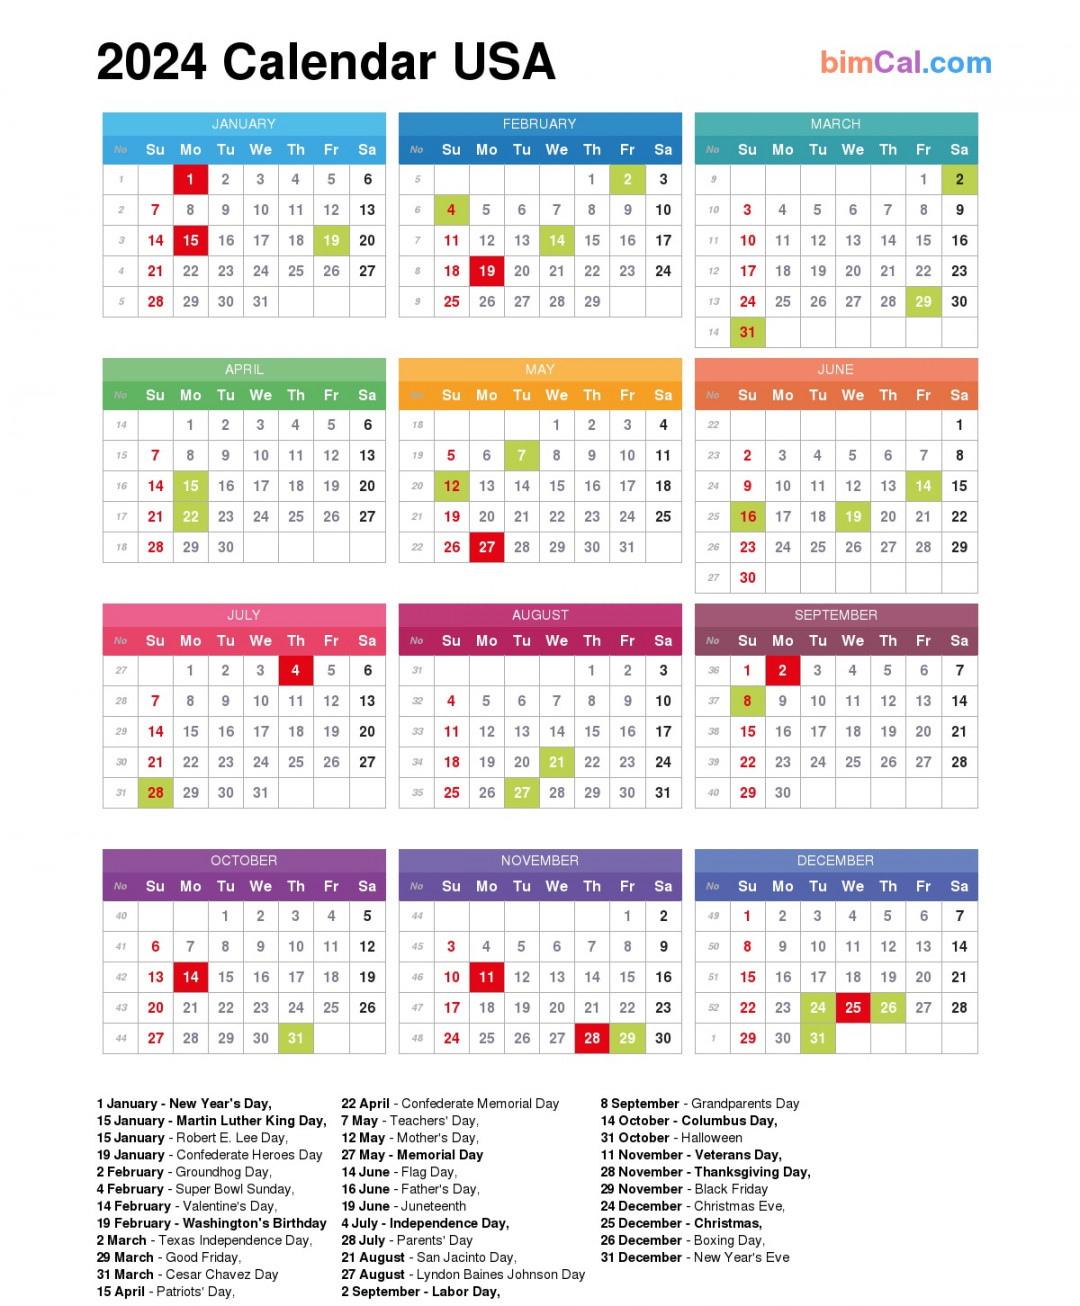 Calendar USA - bimCal